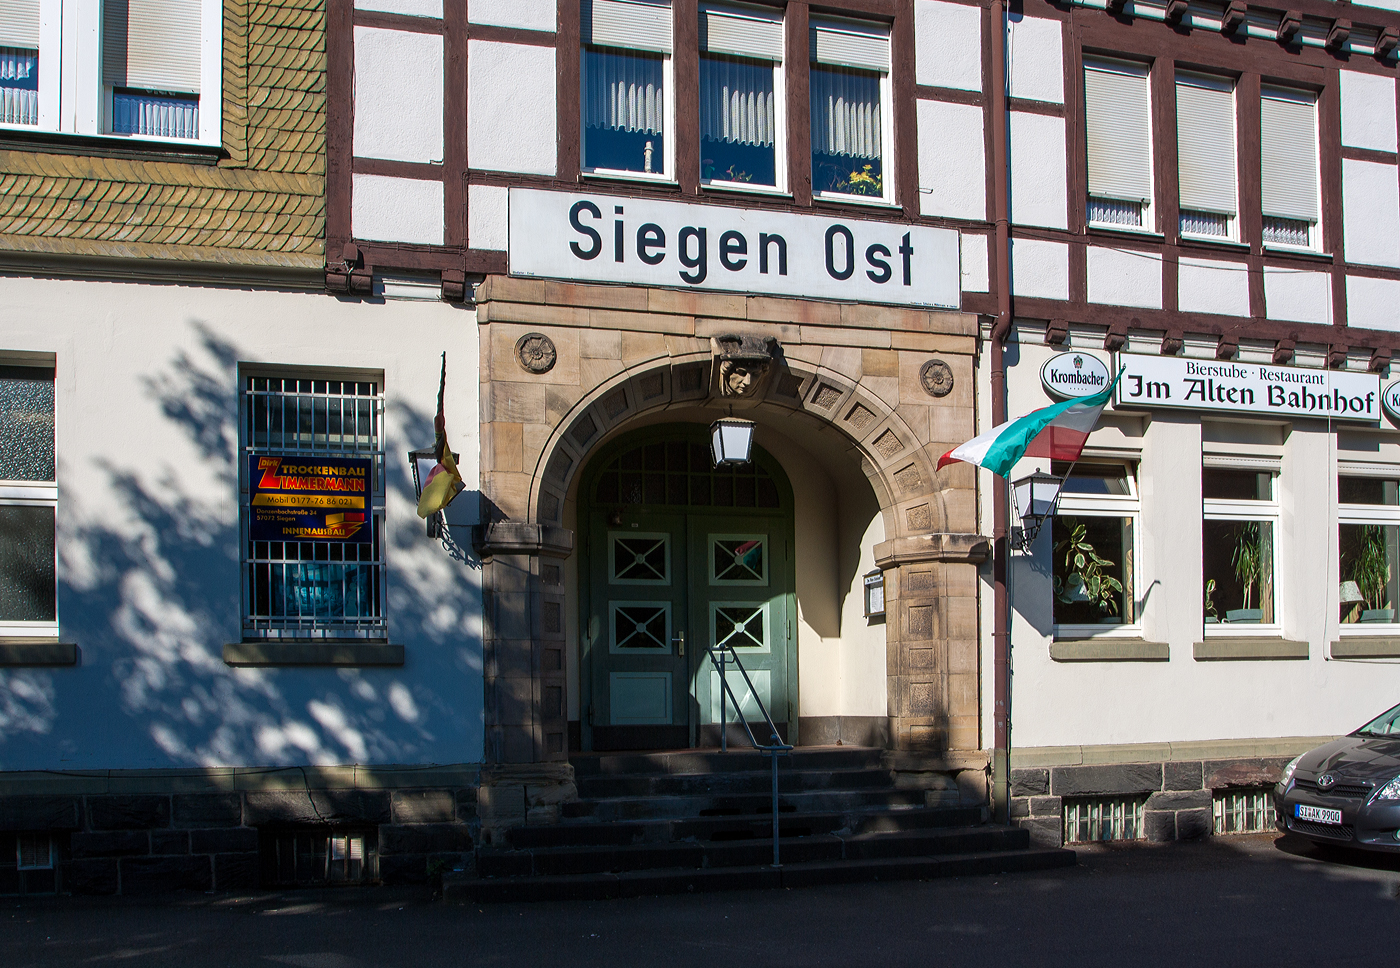 Der ehemalige Bahnhof Siegen Ost  bei km106,2 (1,7 km) der KBS 445 – Dillstrecke (Siegen–Gießen), heute Bierstube/Restaurant, hier am 27 Juni 2011.

Der Bahnhof Siegen Ost wurde 1993 für den Personenverkehr geschlossen,  heute ist Siegen Ost nur noch als Gbf bekannt.
